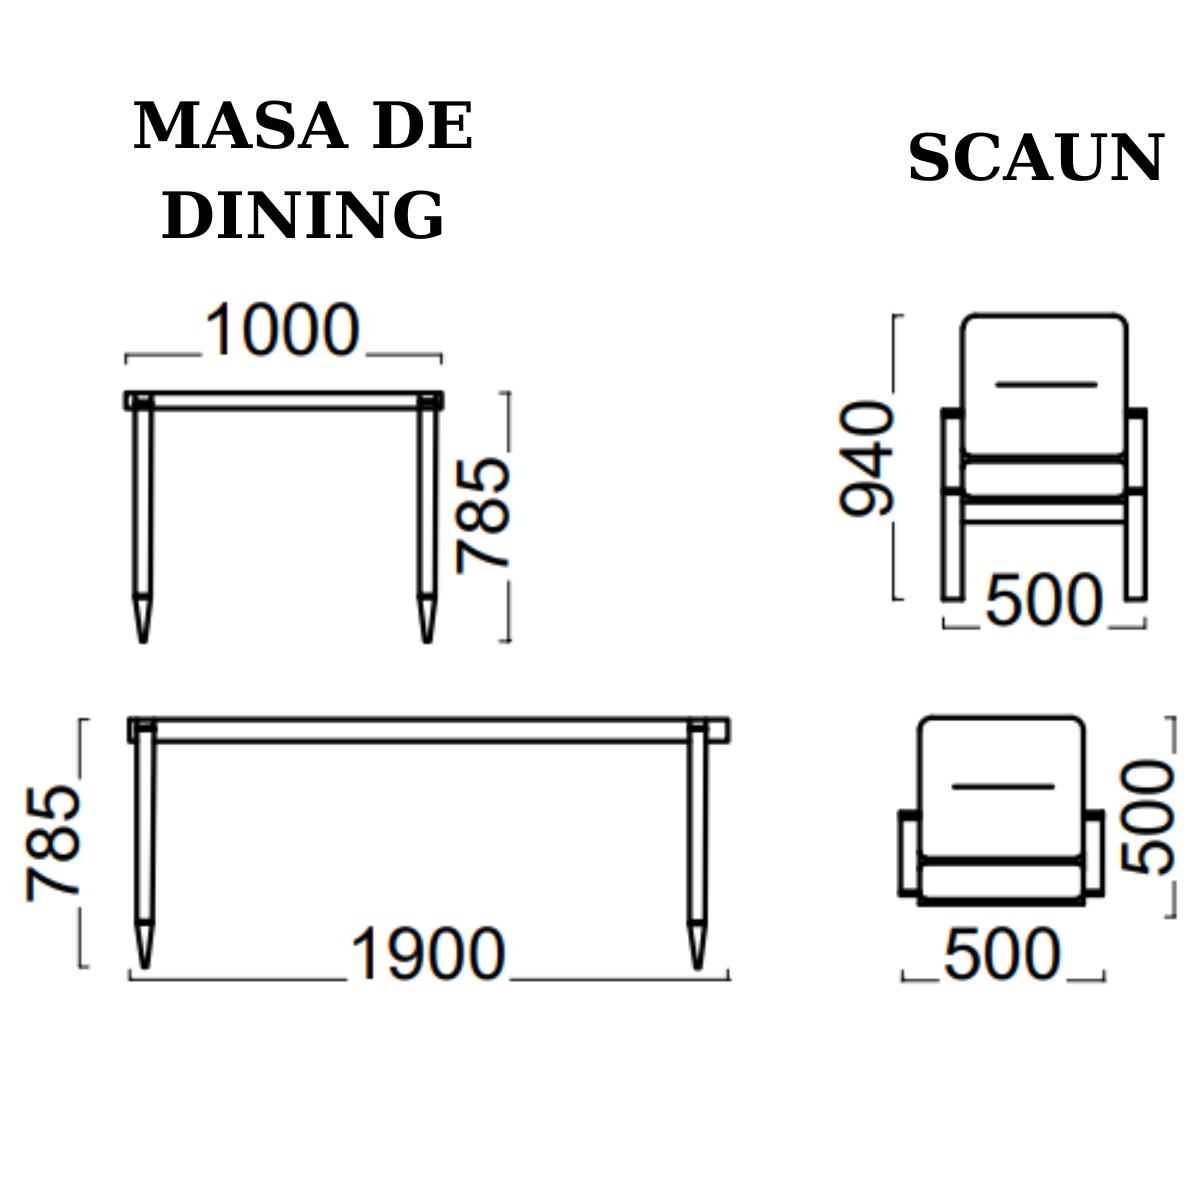 Set Masa cu 6 scaune de dining De Lux, Frisco